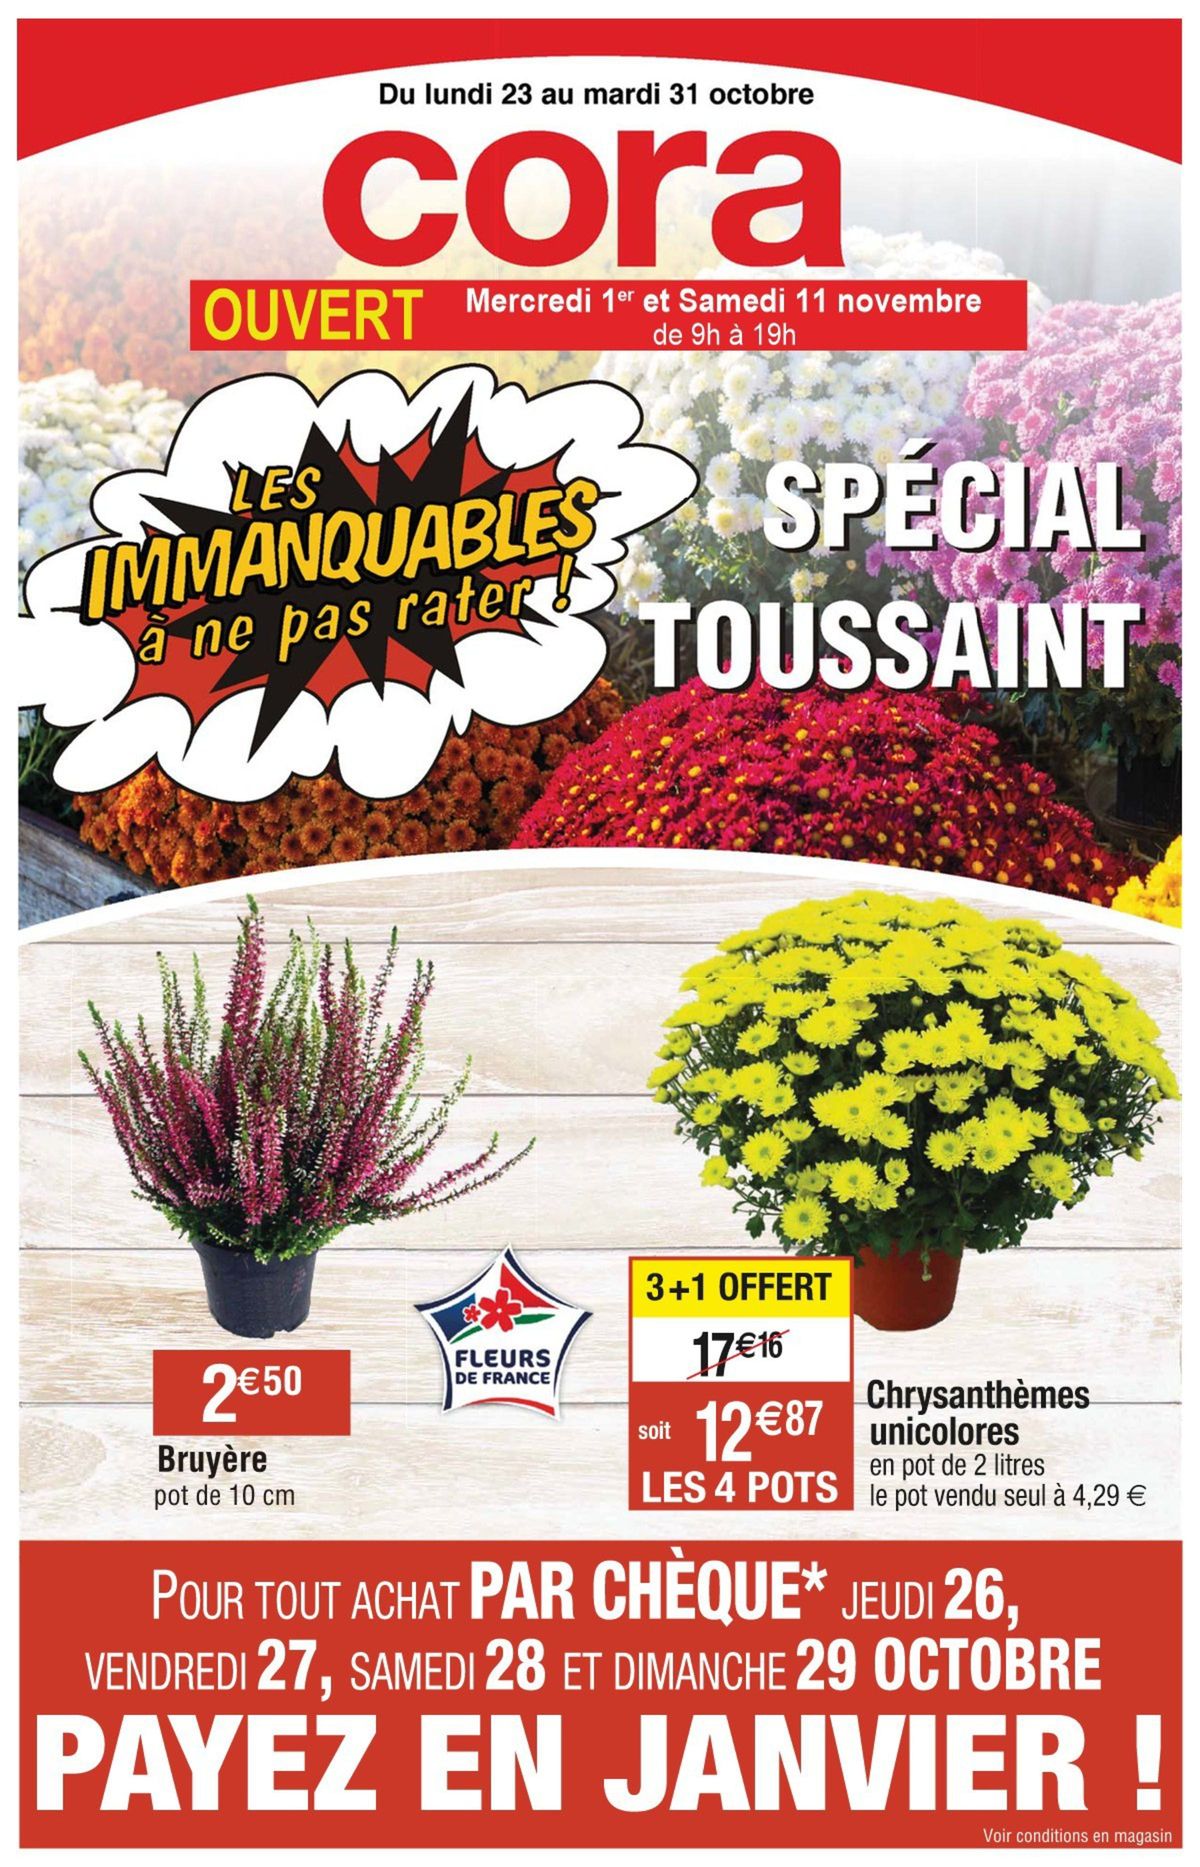 Catalogue Les immanquables spécial Toussaint, page 00001